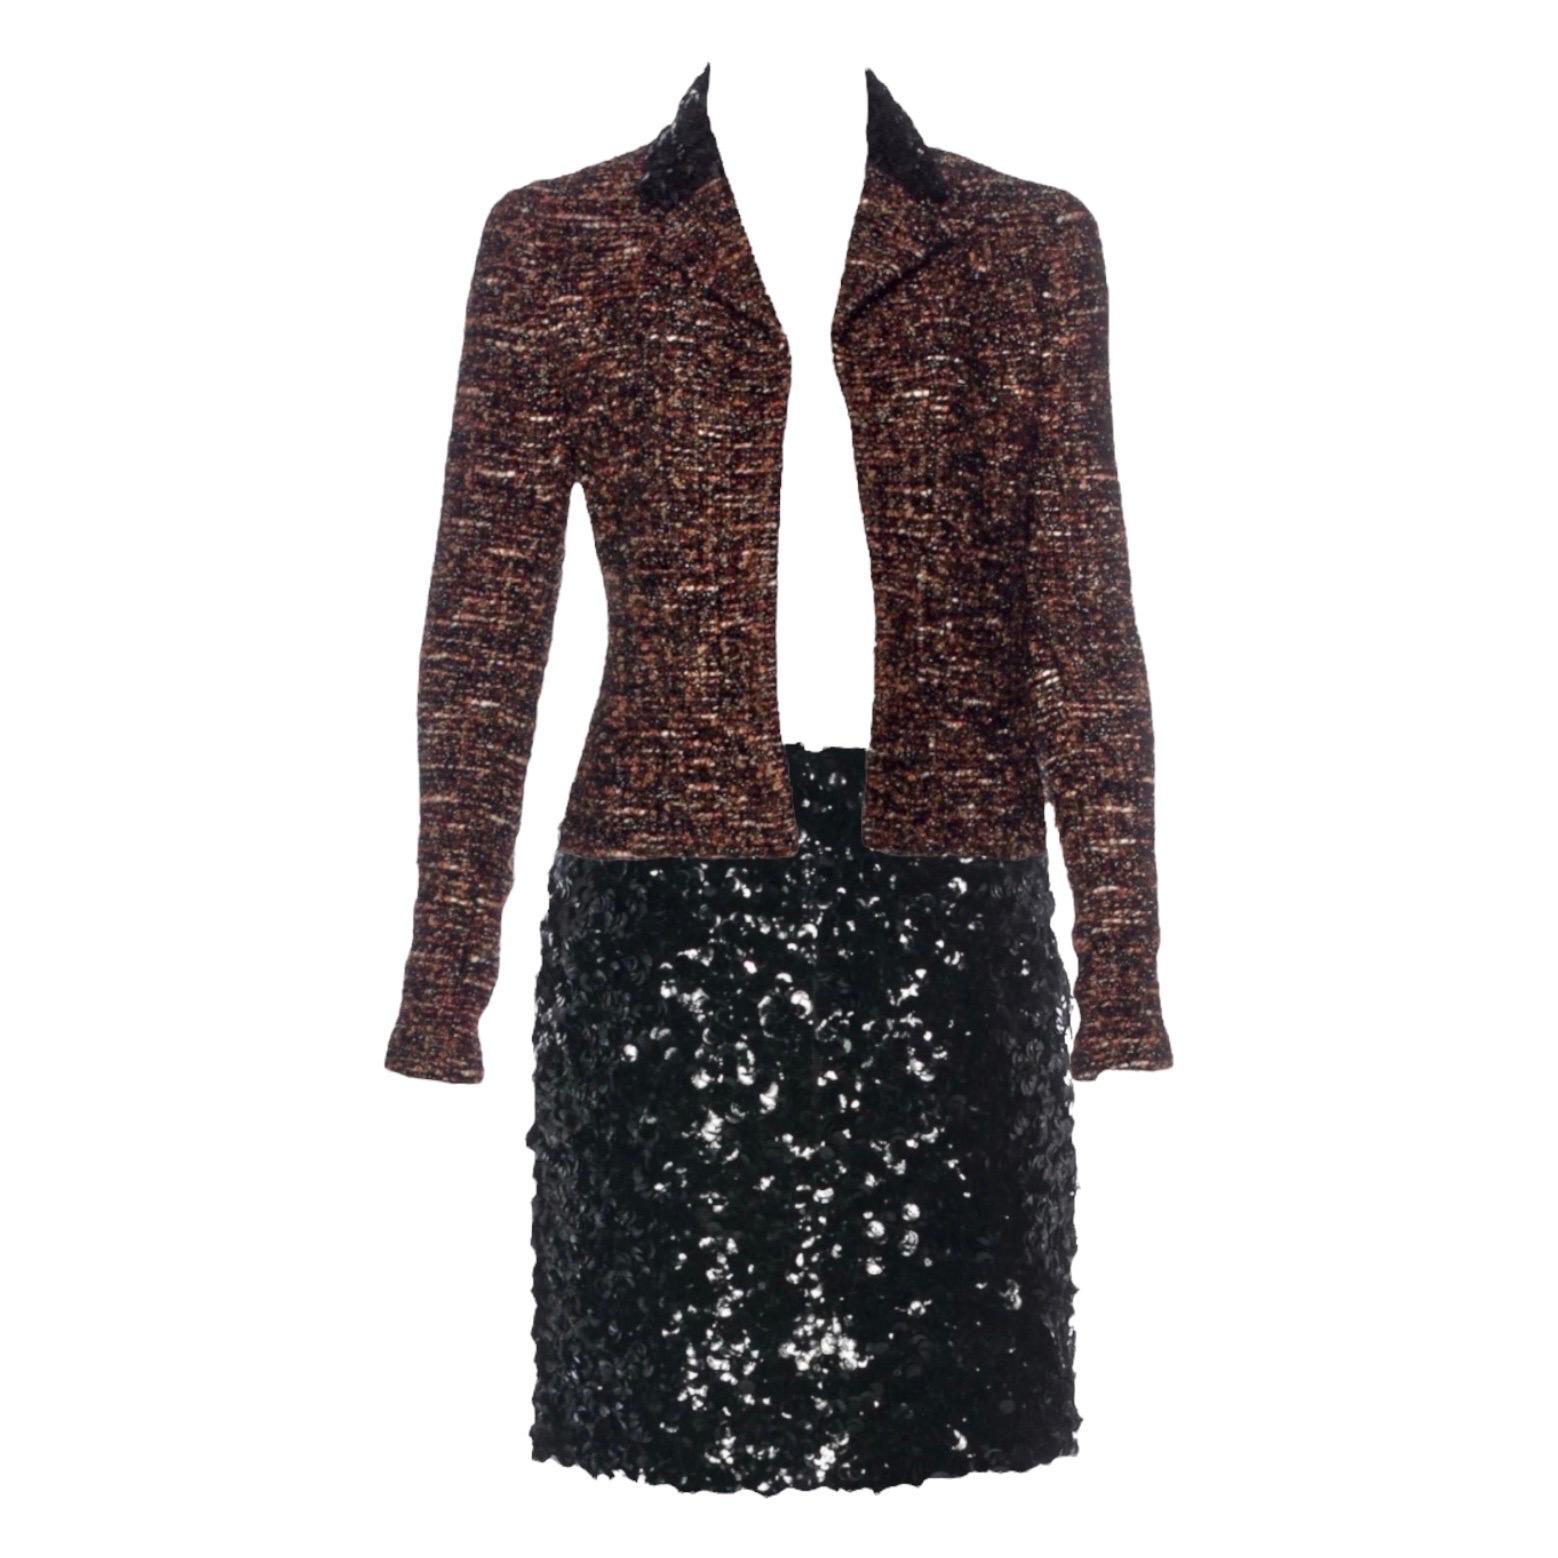 Women's UNWORN Chanel Metallic Fantasy Tweed Sequin Trim Jacket Blazer Skirt Suit 38-40 For Sale